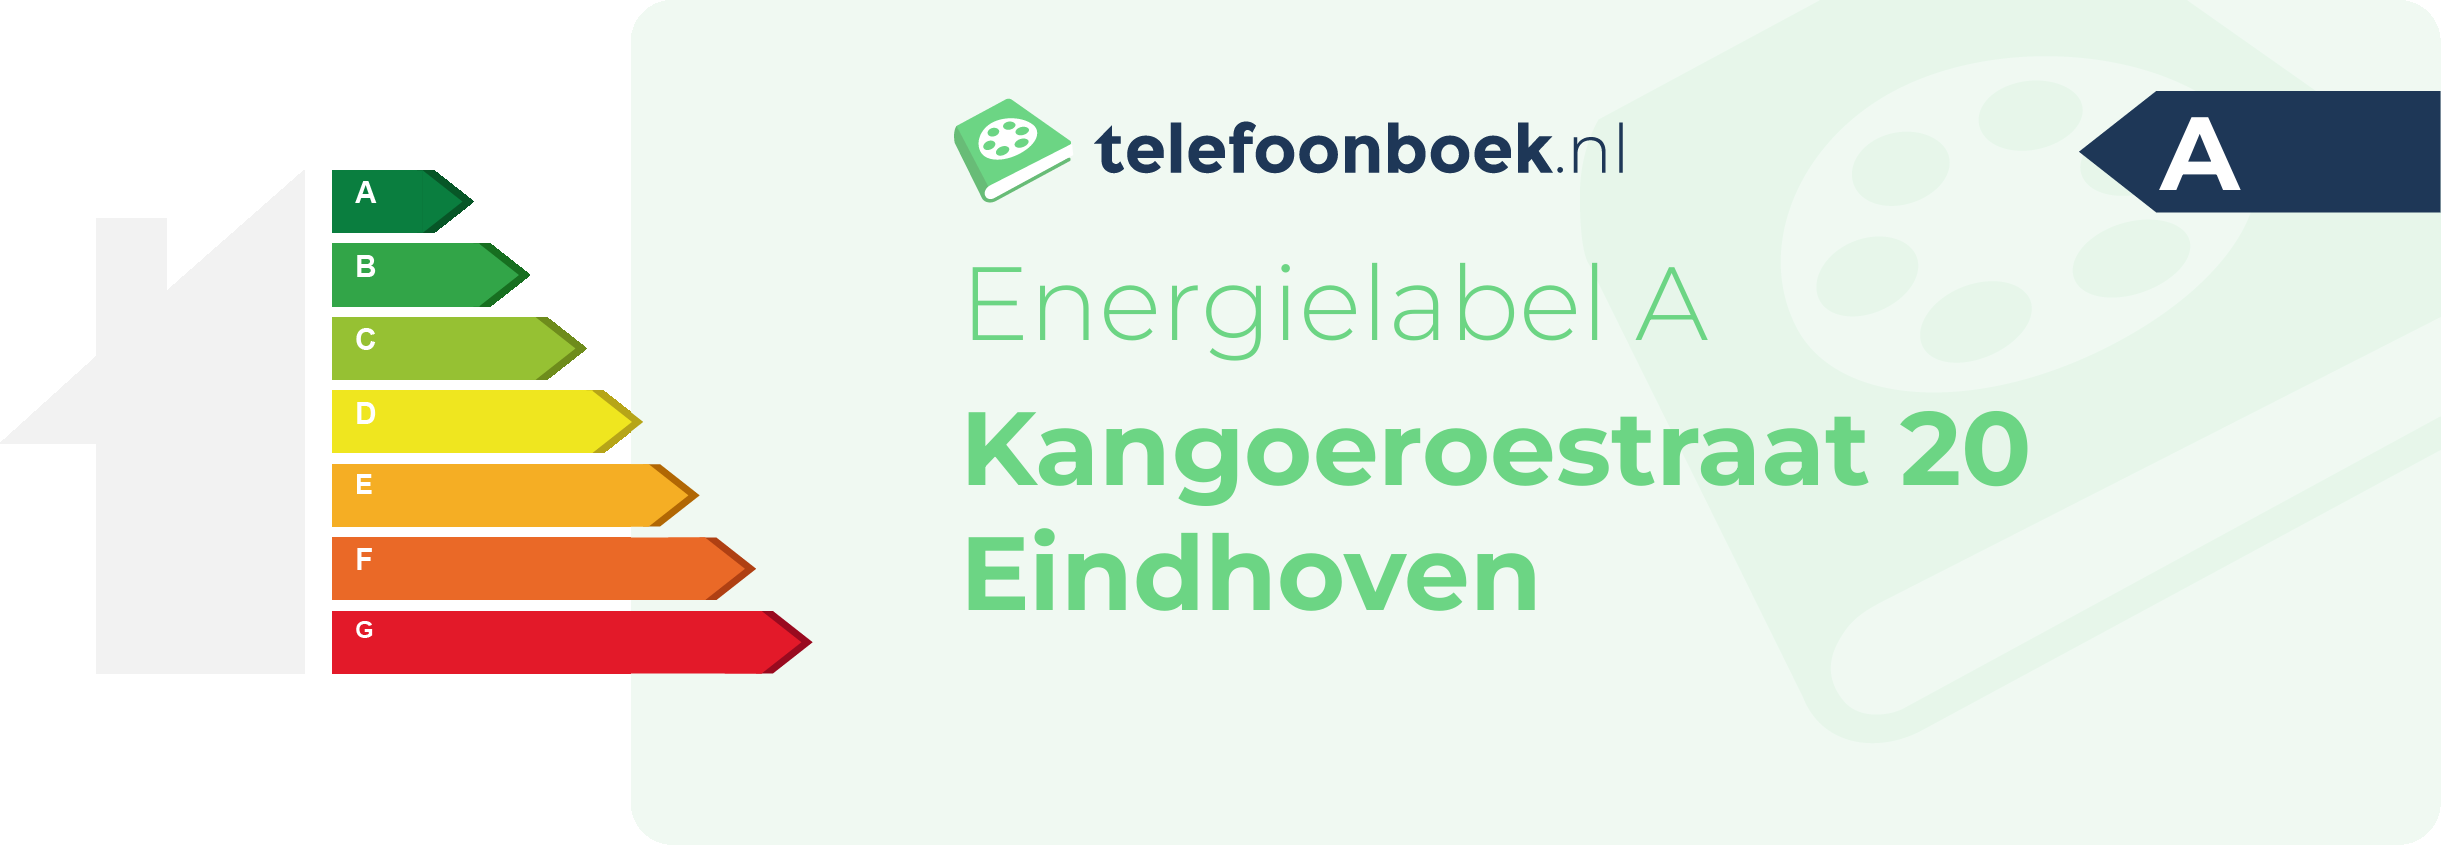 Energielabel Kangoeroestraat 20 Eindhoven